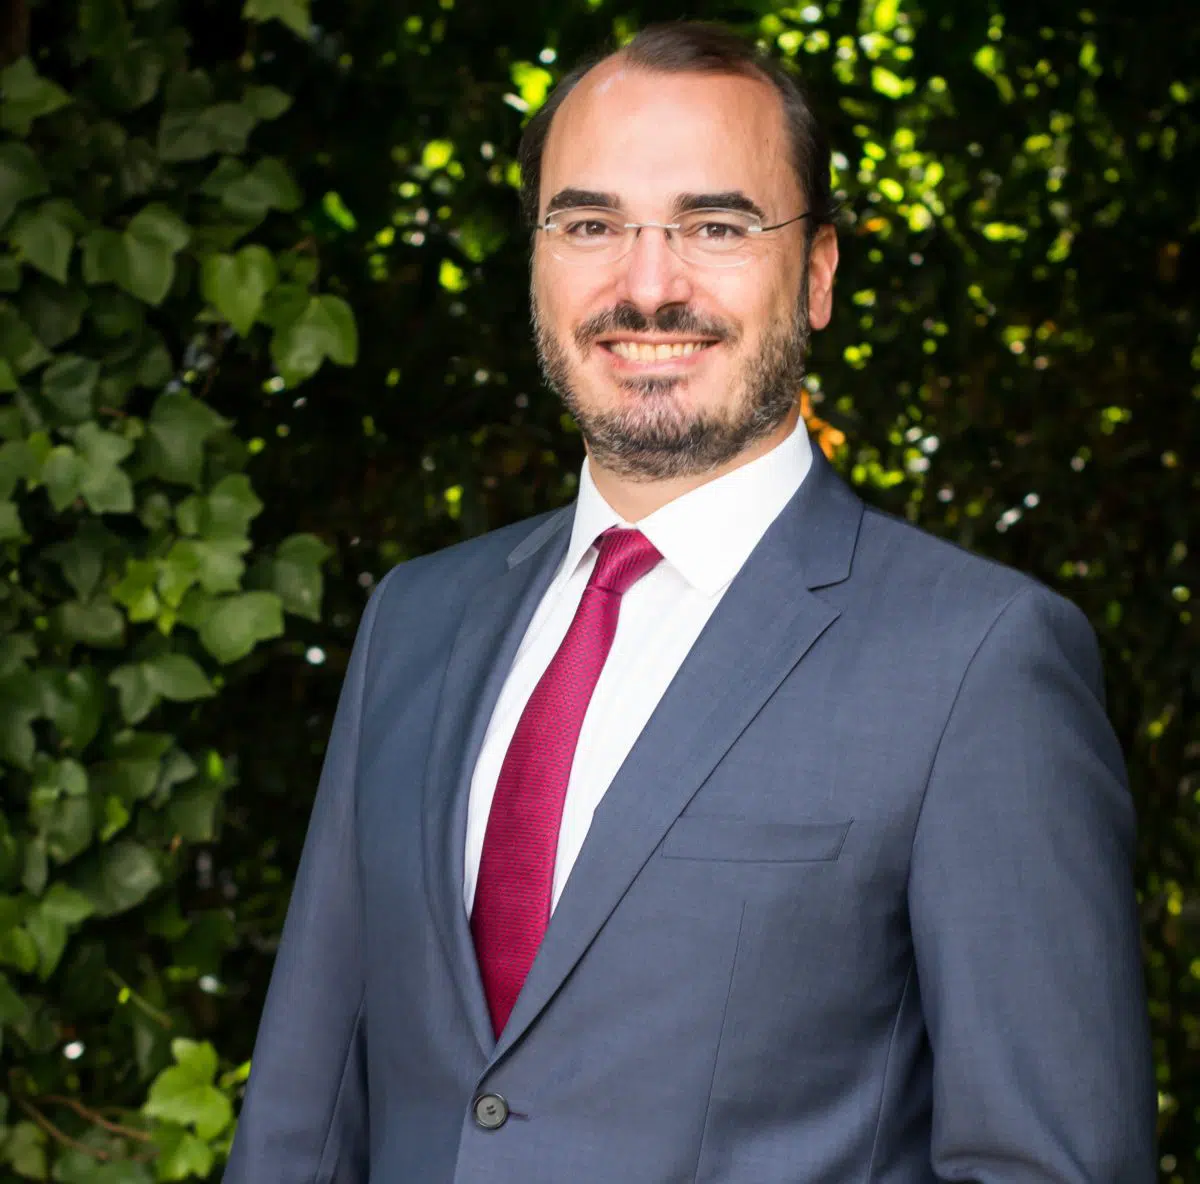 Jorge Vázquez, CEO de Ashurst España, asegura que los inversores buscan reglas de juego estables para poder hacer negocio